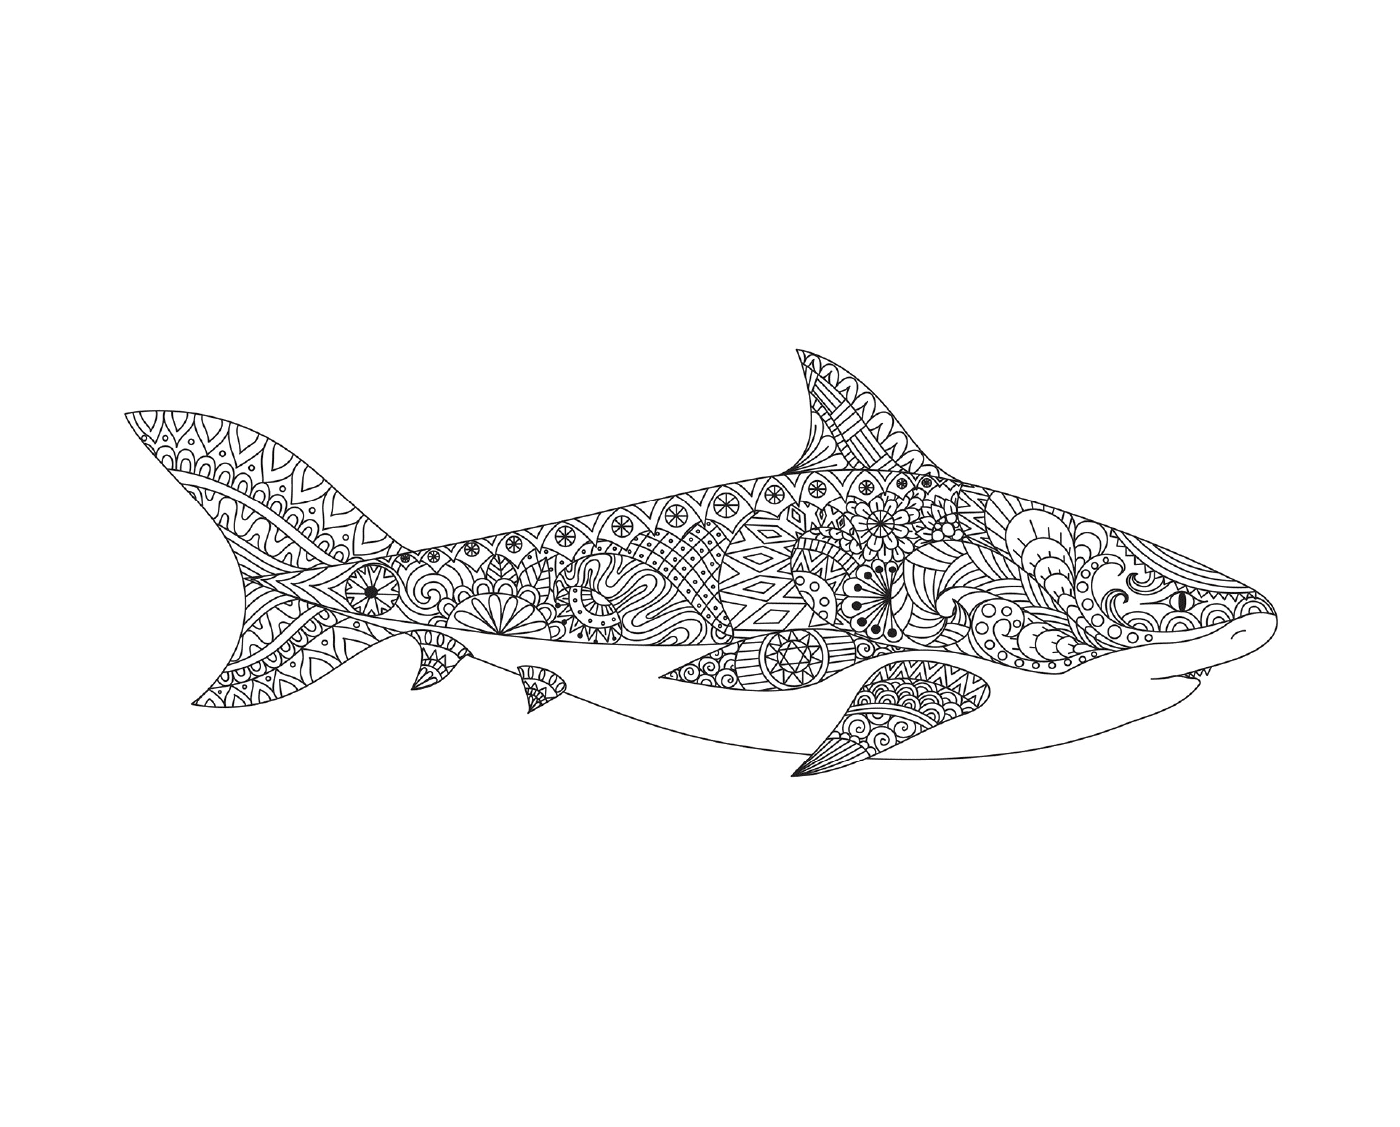  eine tätowierte Darstellung eines erwachsenen Hais mit offenem Mund 